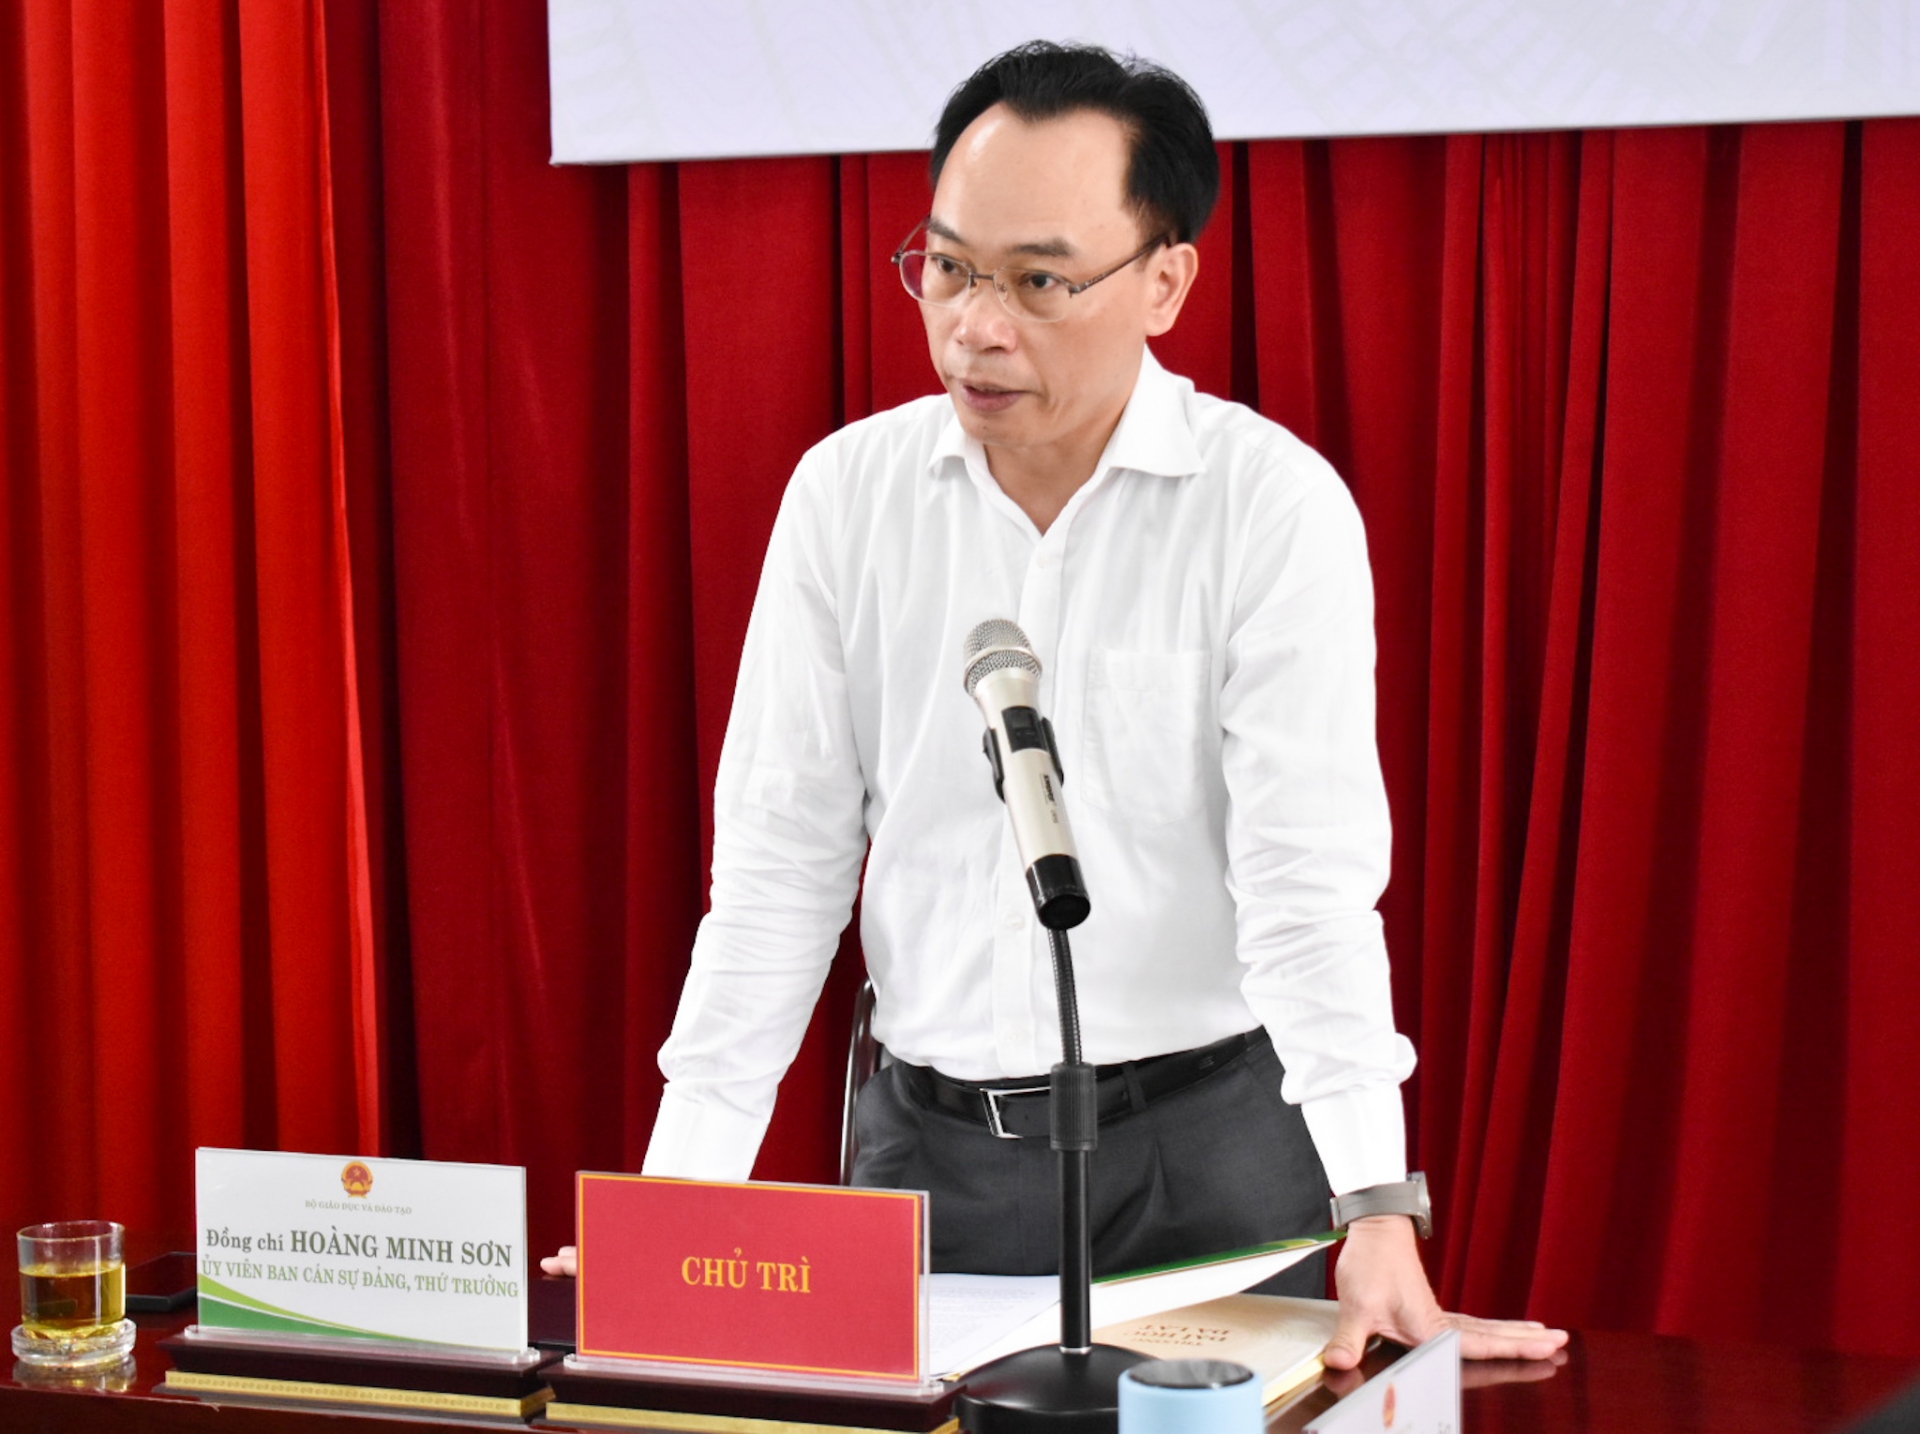 Thứ trưởng Bộ GD & ĐT Hoàng Minh Sơn chỉ đạo kết luận buổi làm việc